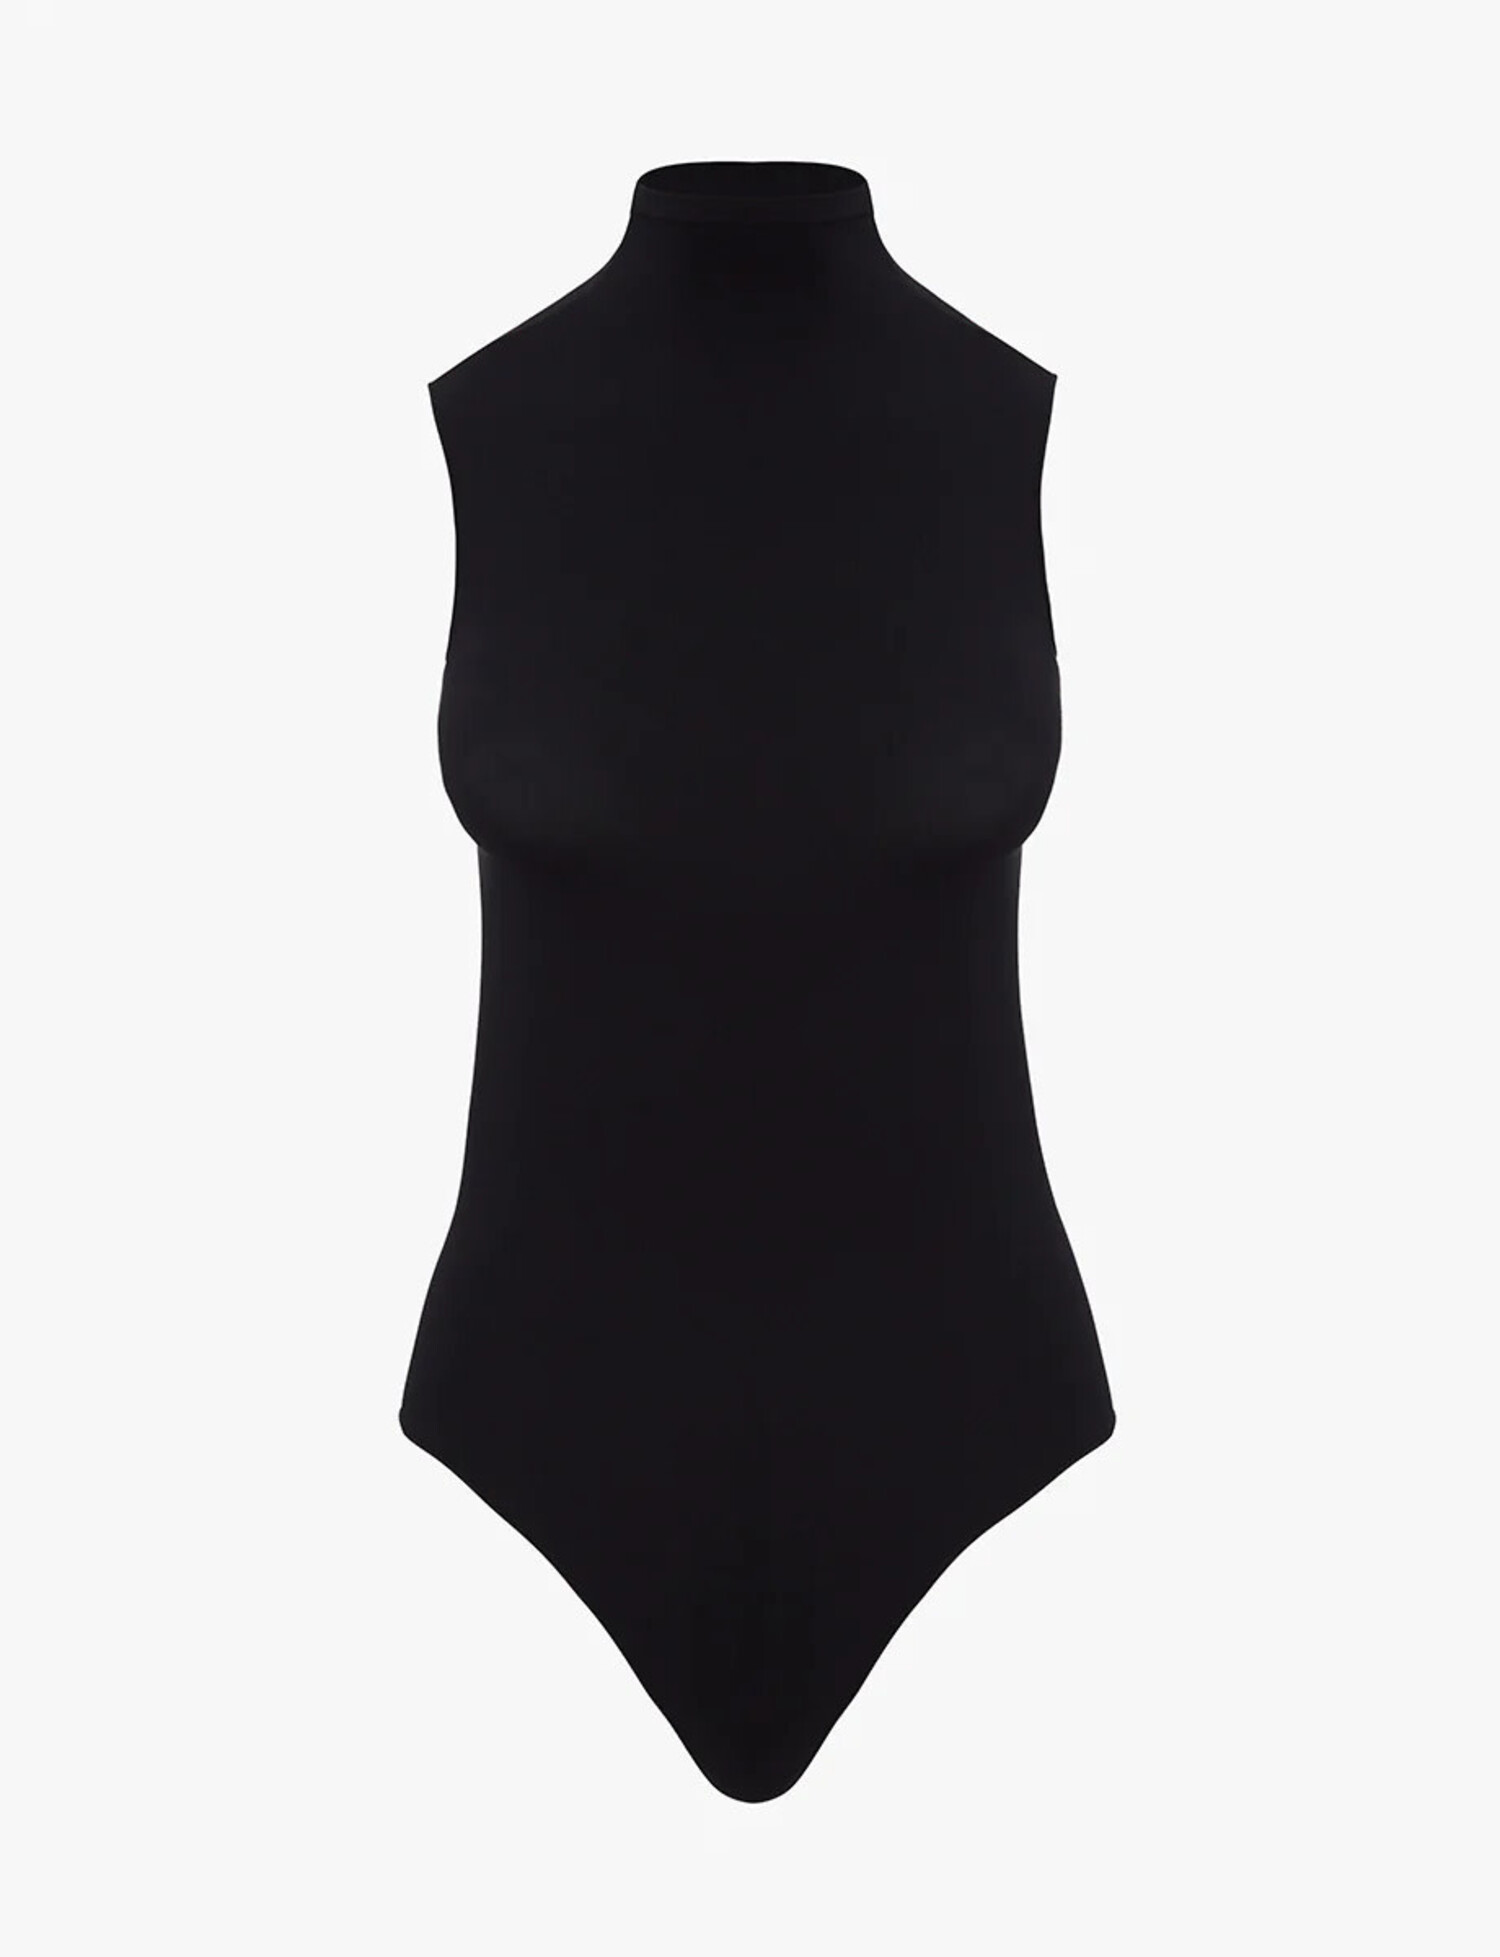 Ollie Sleeveless Bodysuit, Black